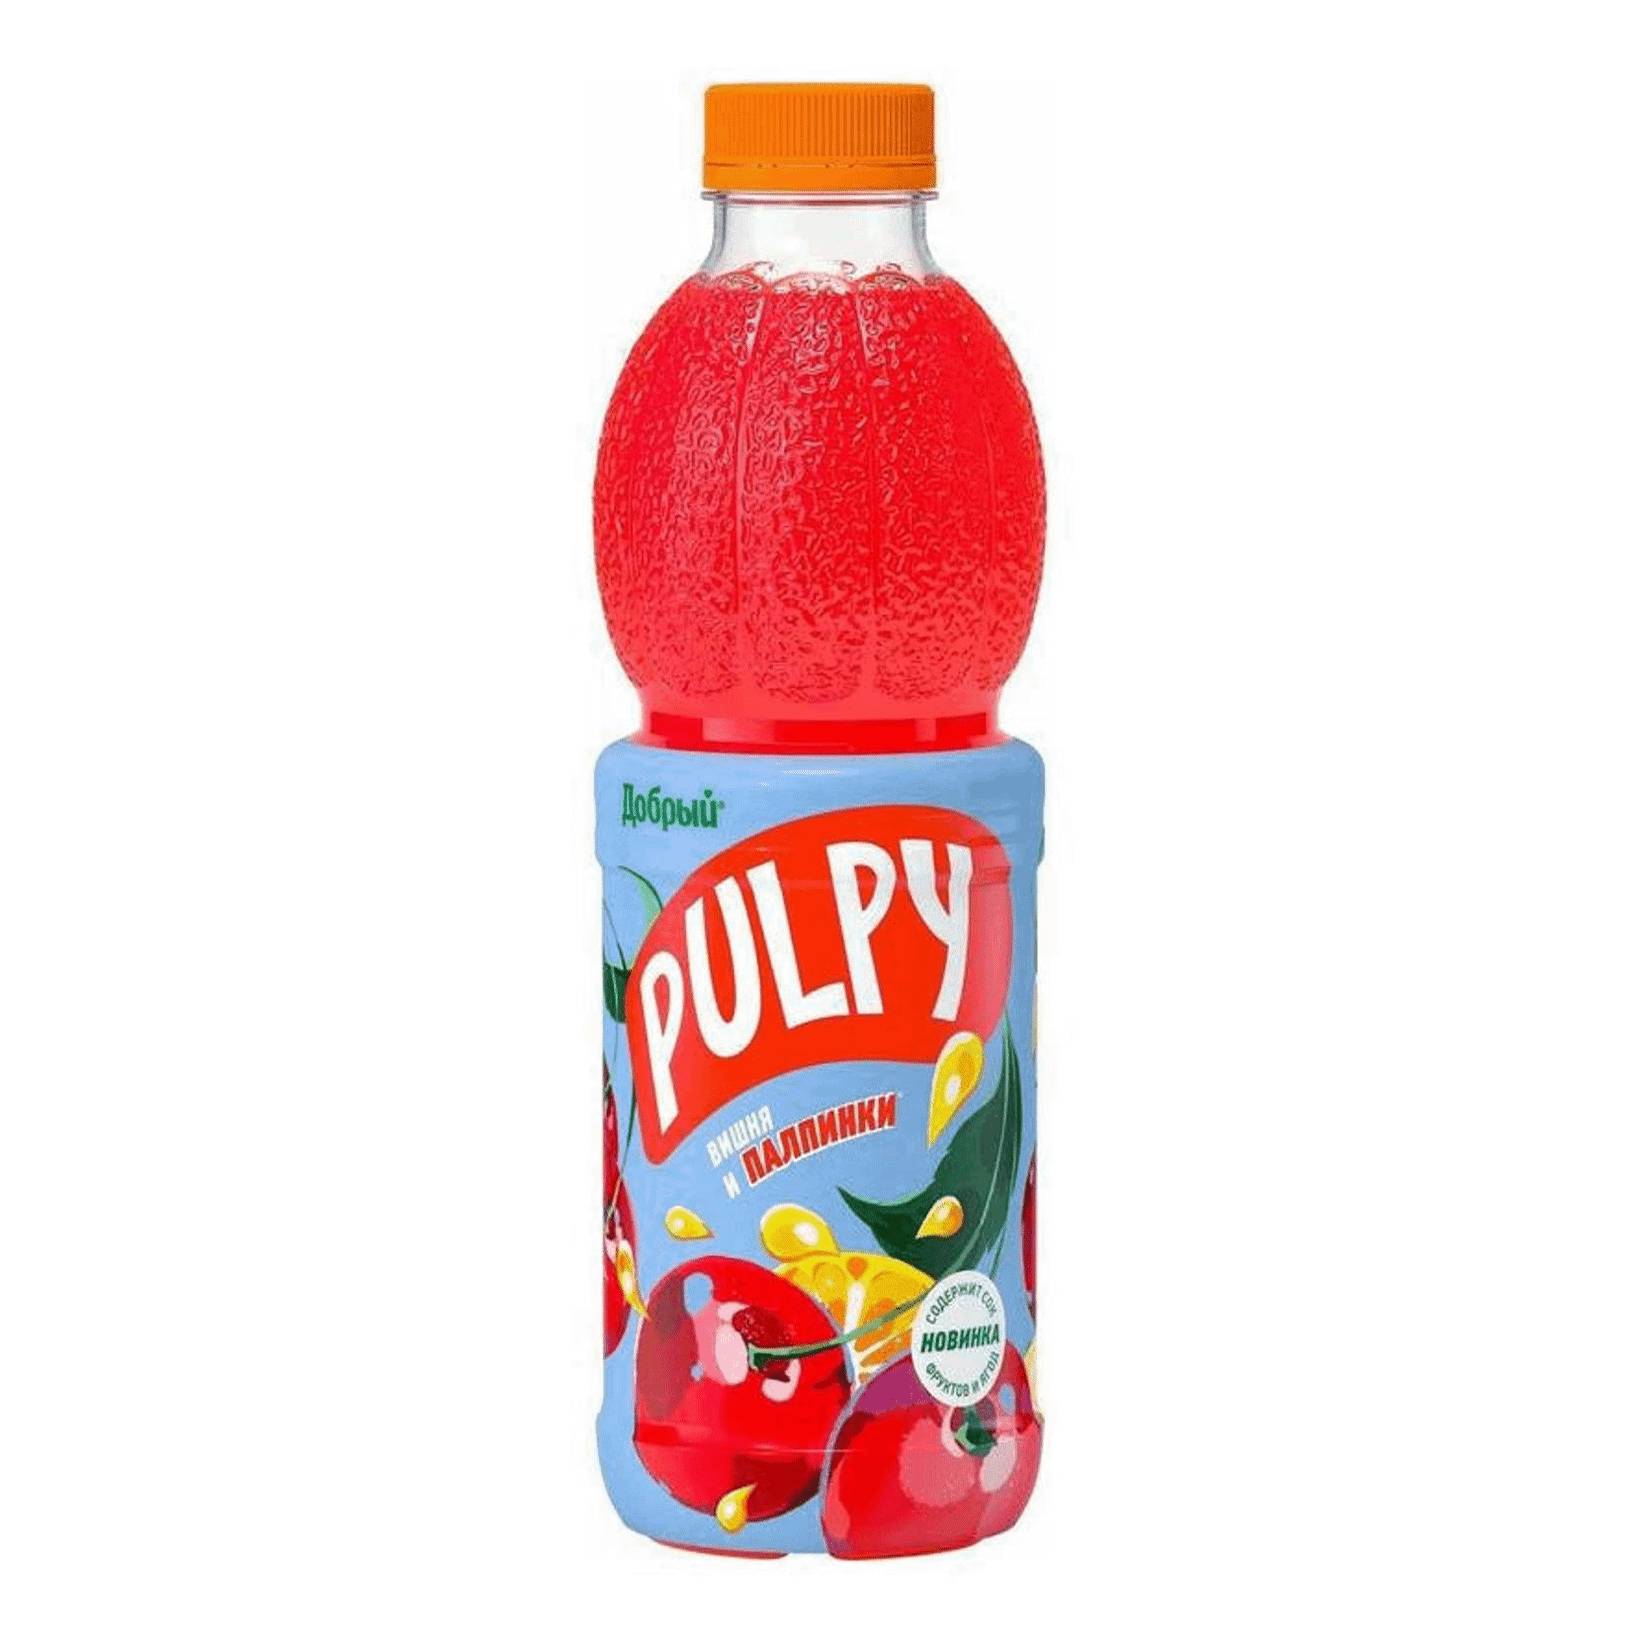 Напиток Добрый сокосодержащий Pulpy вишня 0,9 л напиток сокосодержащий pulpy апельсин с мякотью 0 9 л